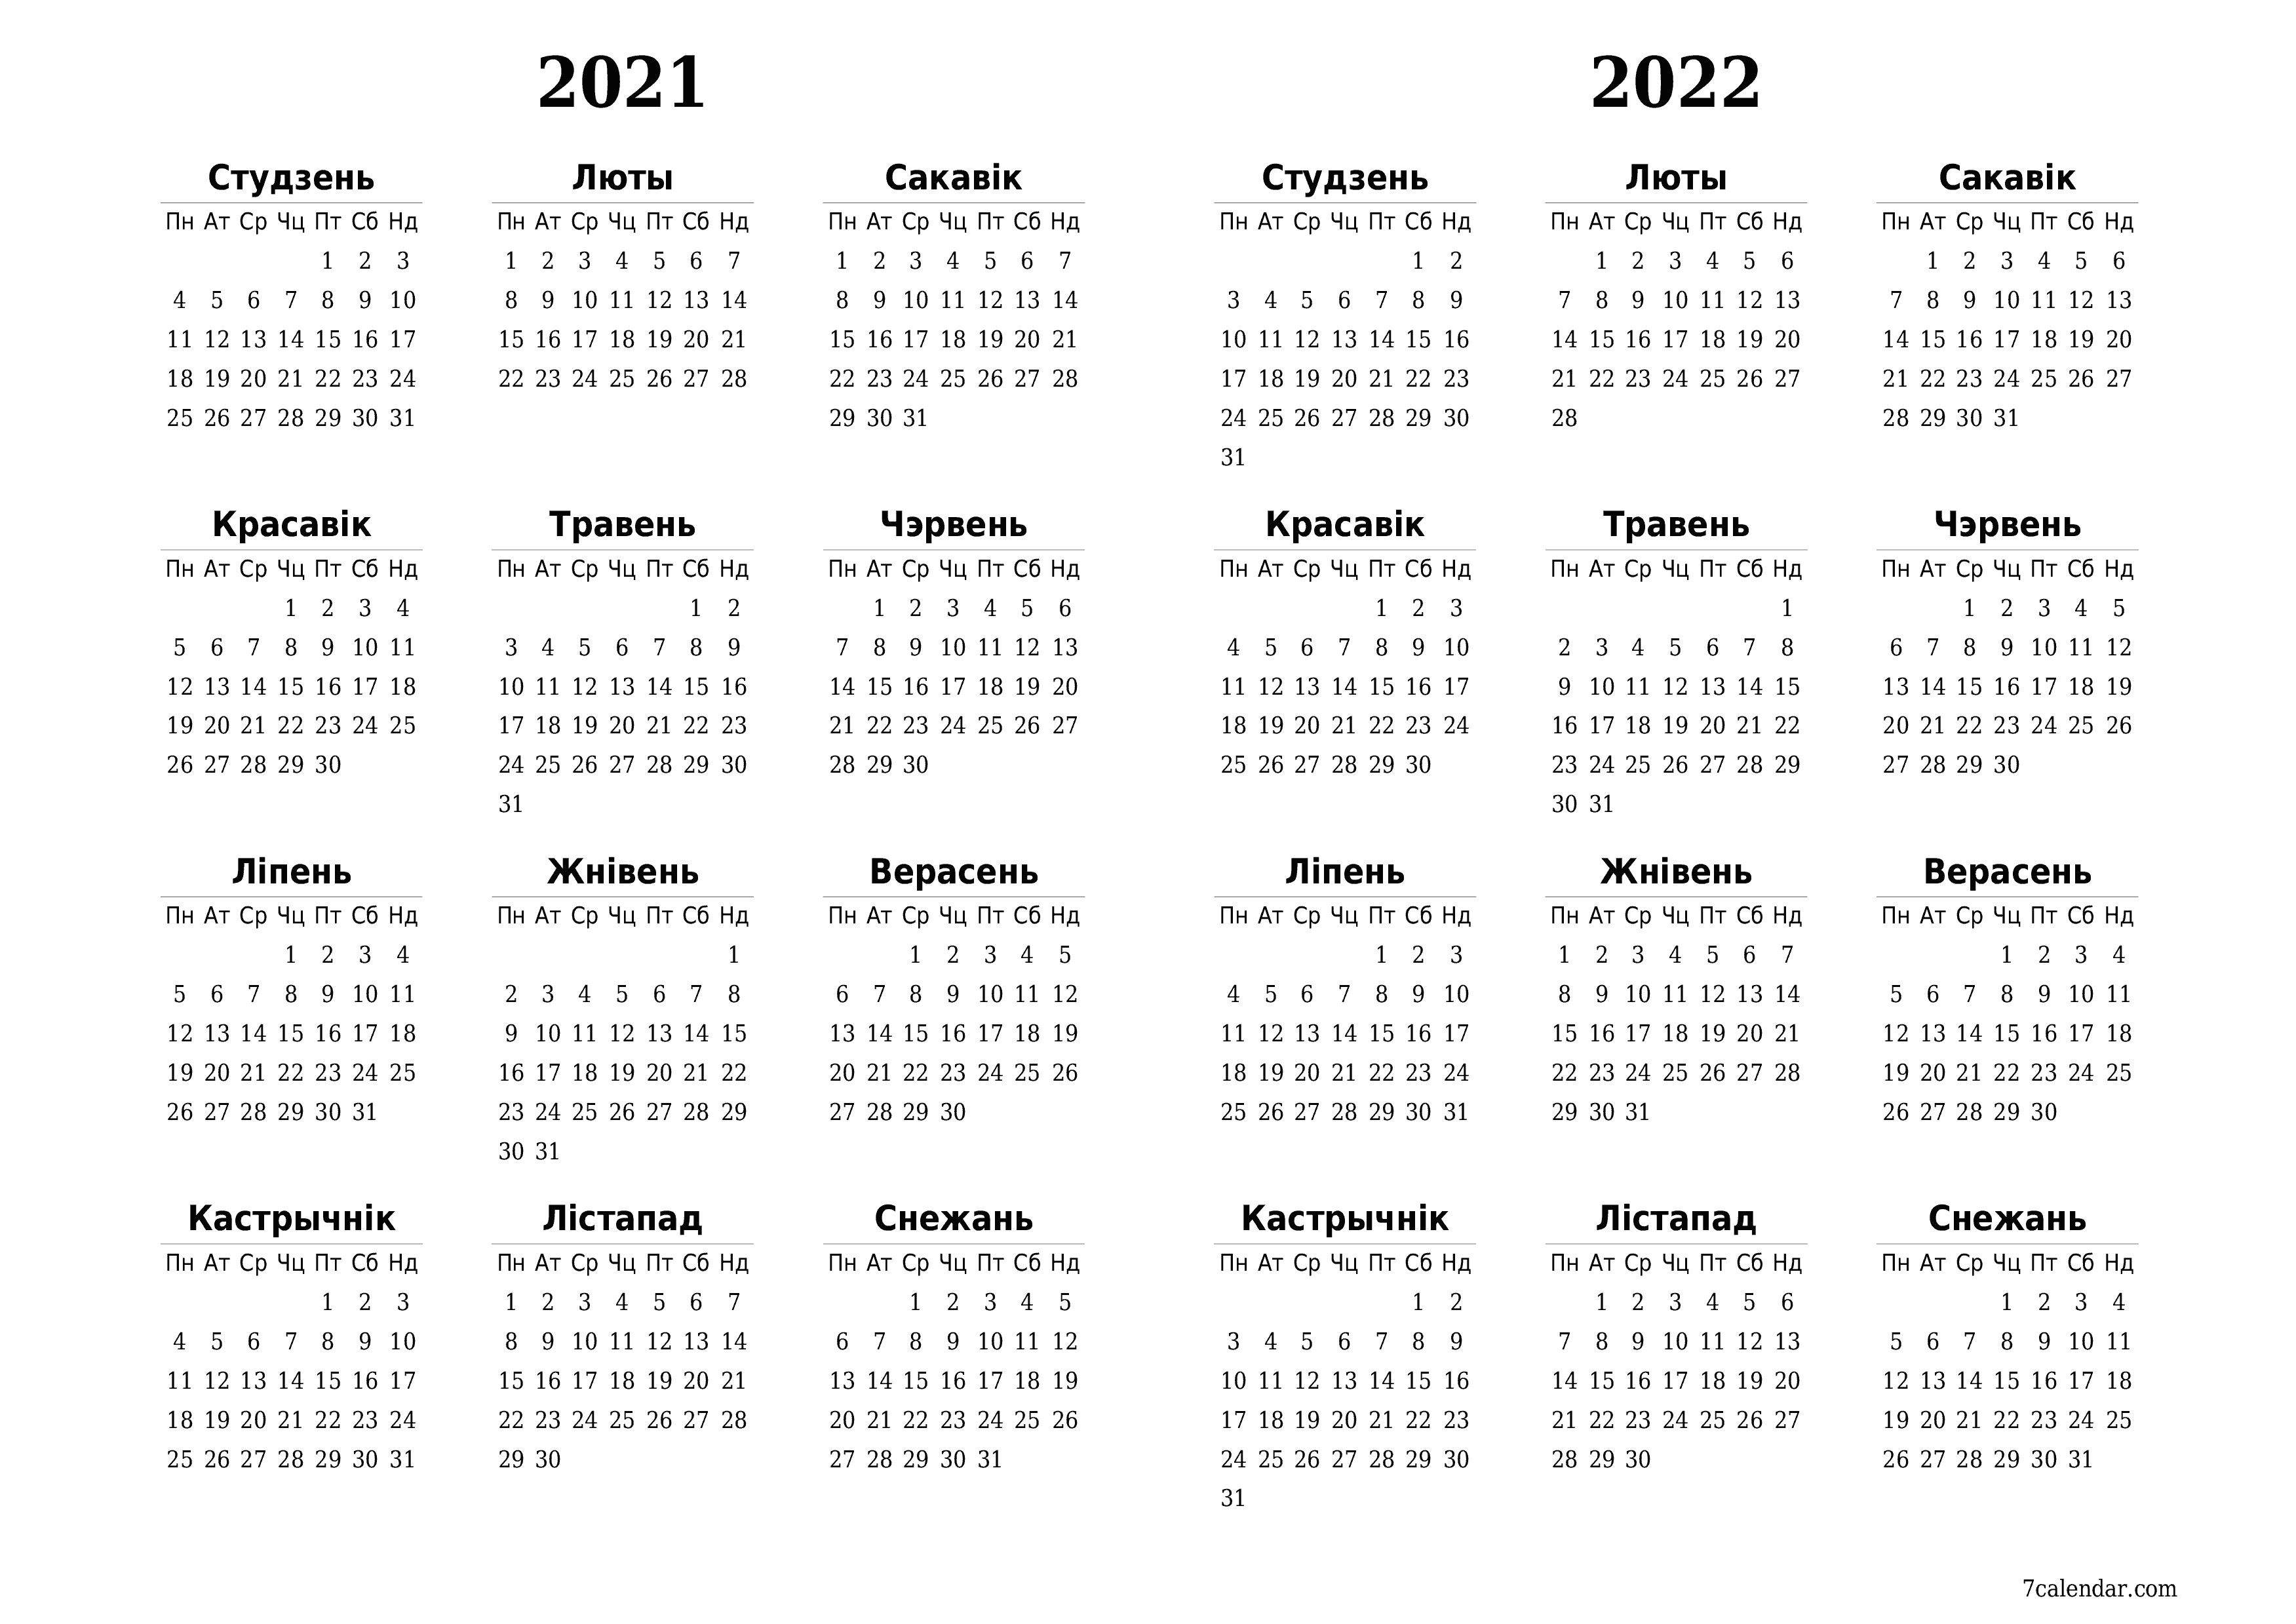  для друку насценны шаблон календара бясплатны гарызантальны Штогадовы каляндар Студзень (Студ) 2021